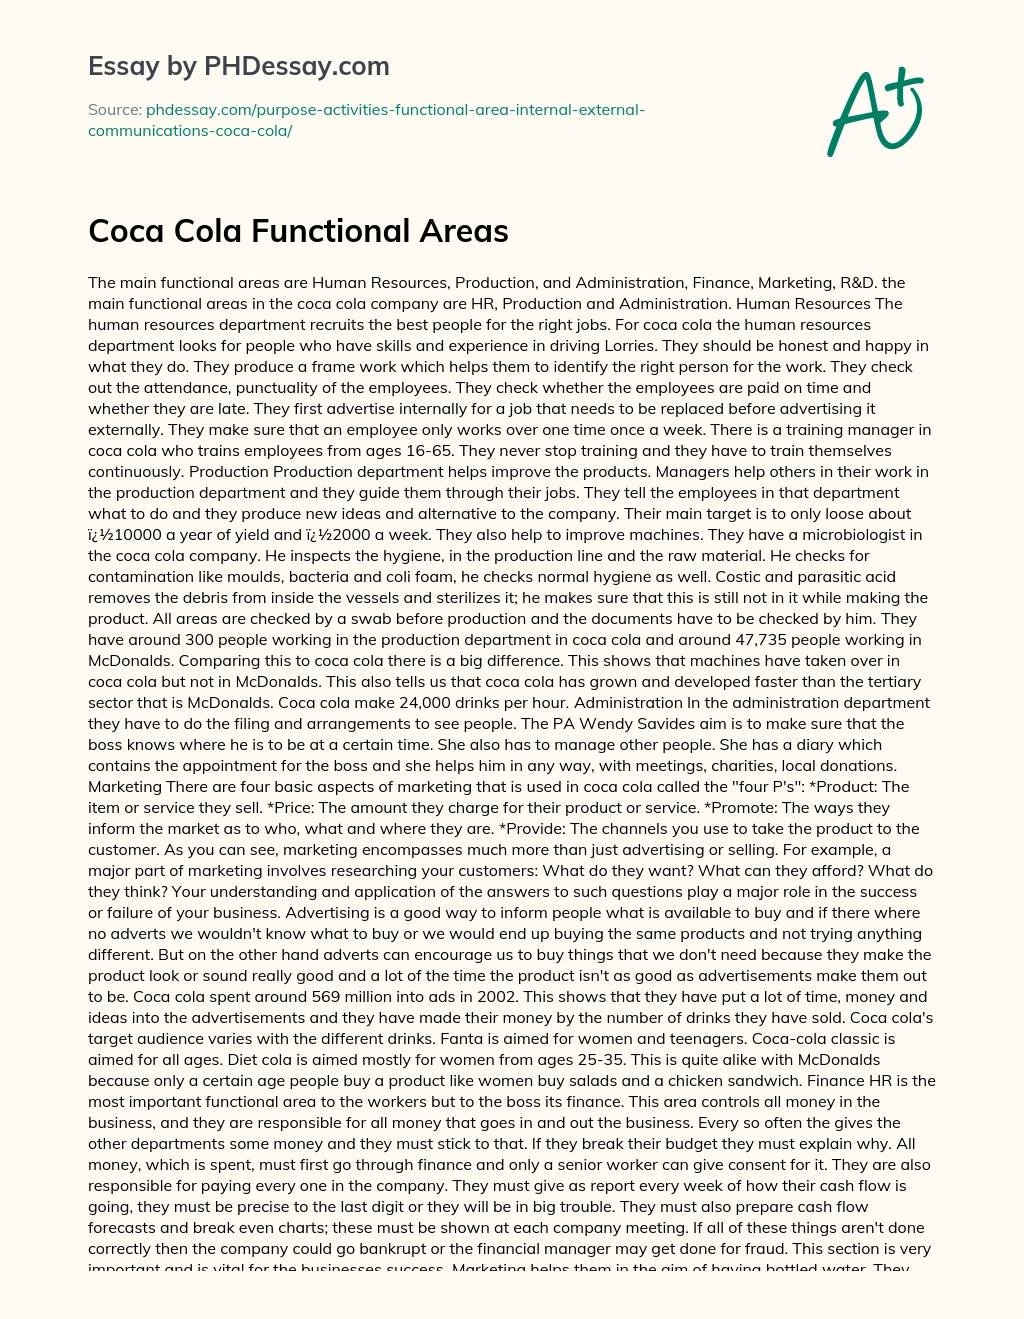 Coca Cola Functional Areas essay